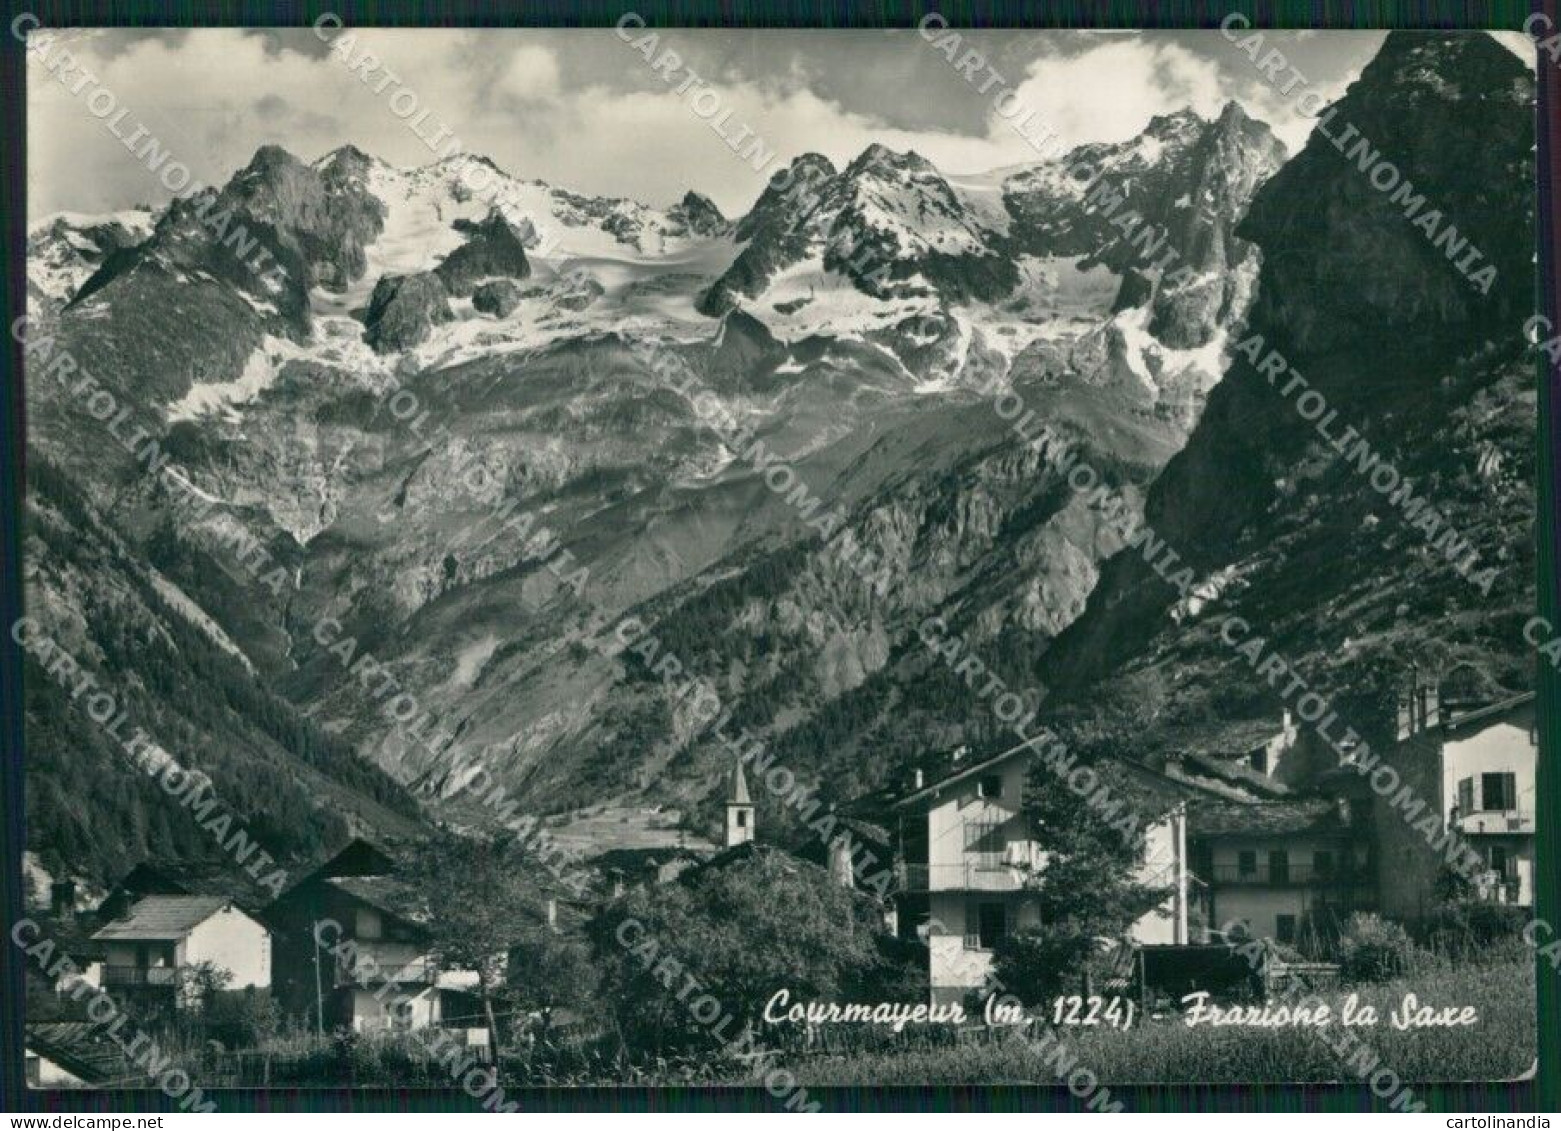 Aosta Courmayeur Saxe STRAPPINO Foto FG Cartolina KV8047 - Aosta